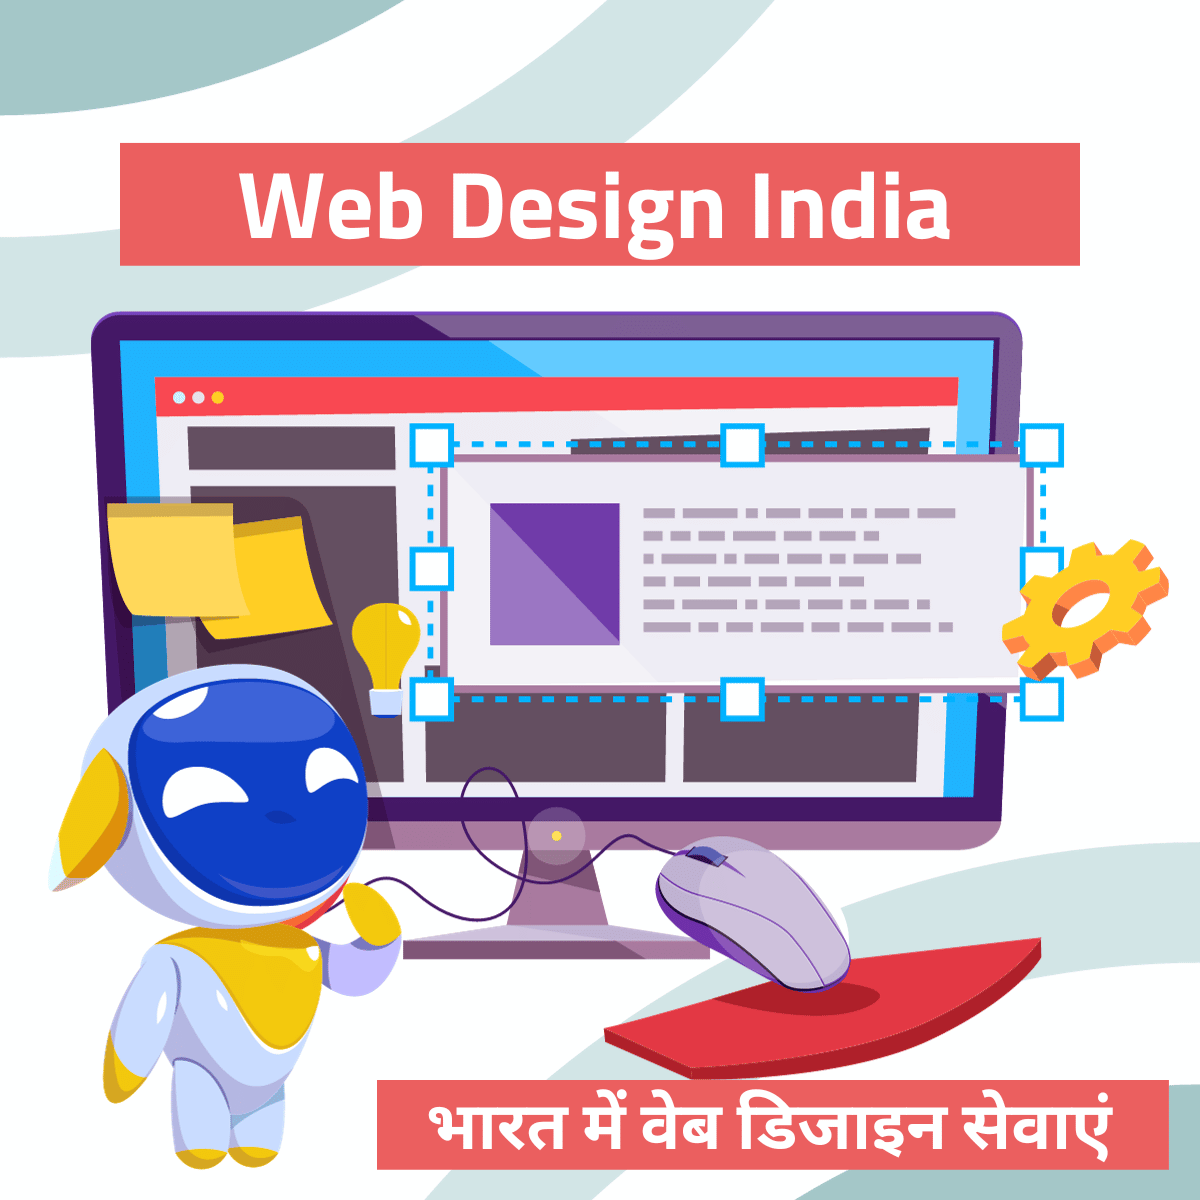 Web Design India भारत में वेब डिजाइन सेवाएं